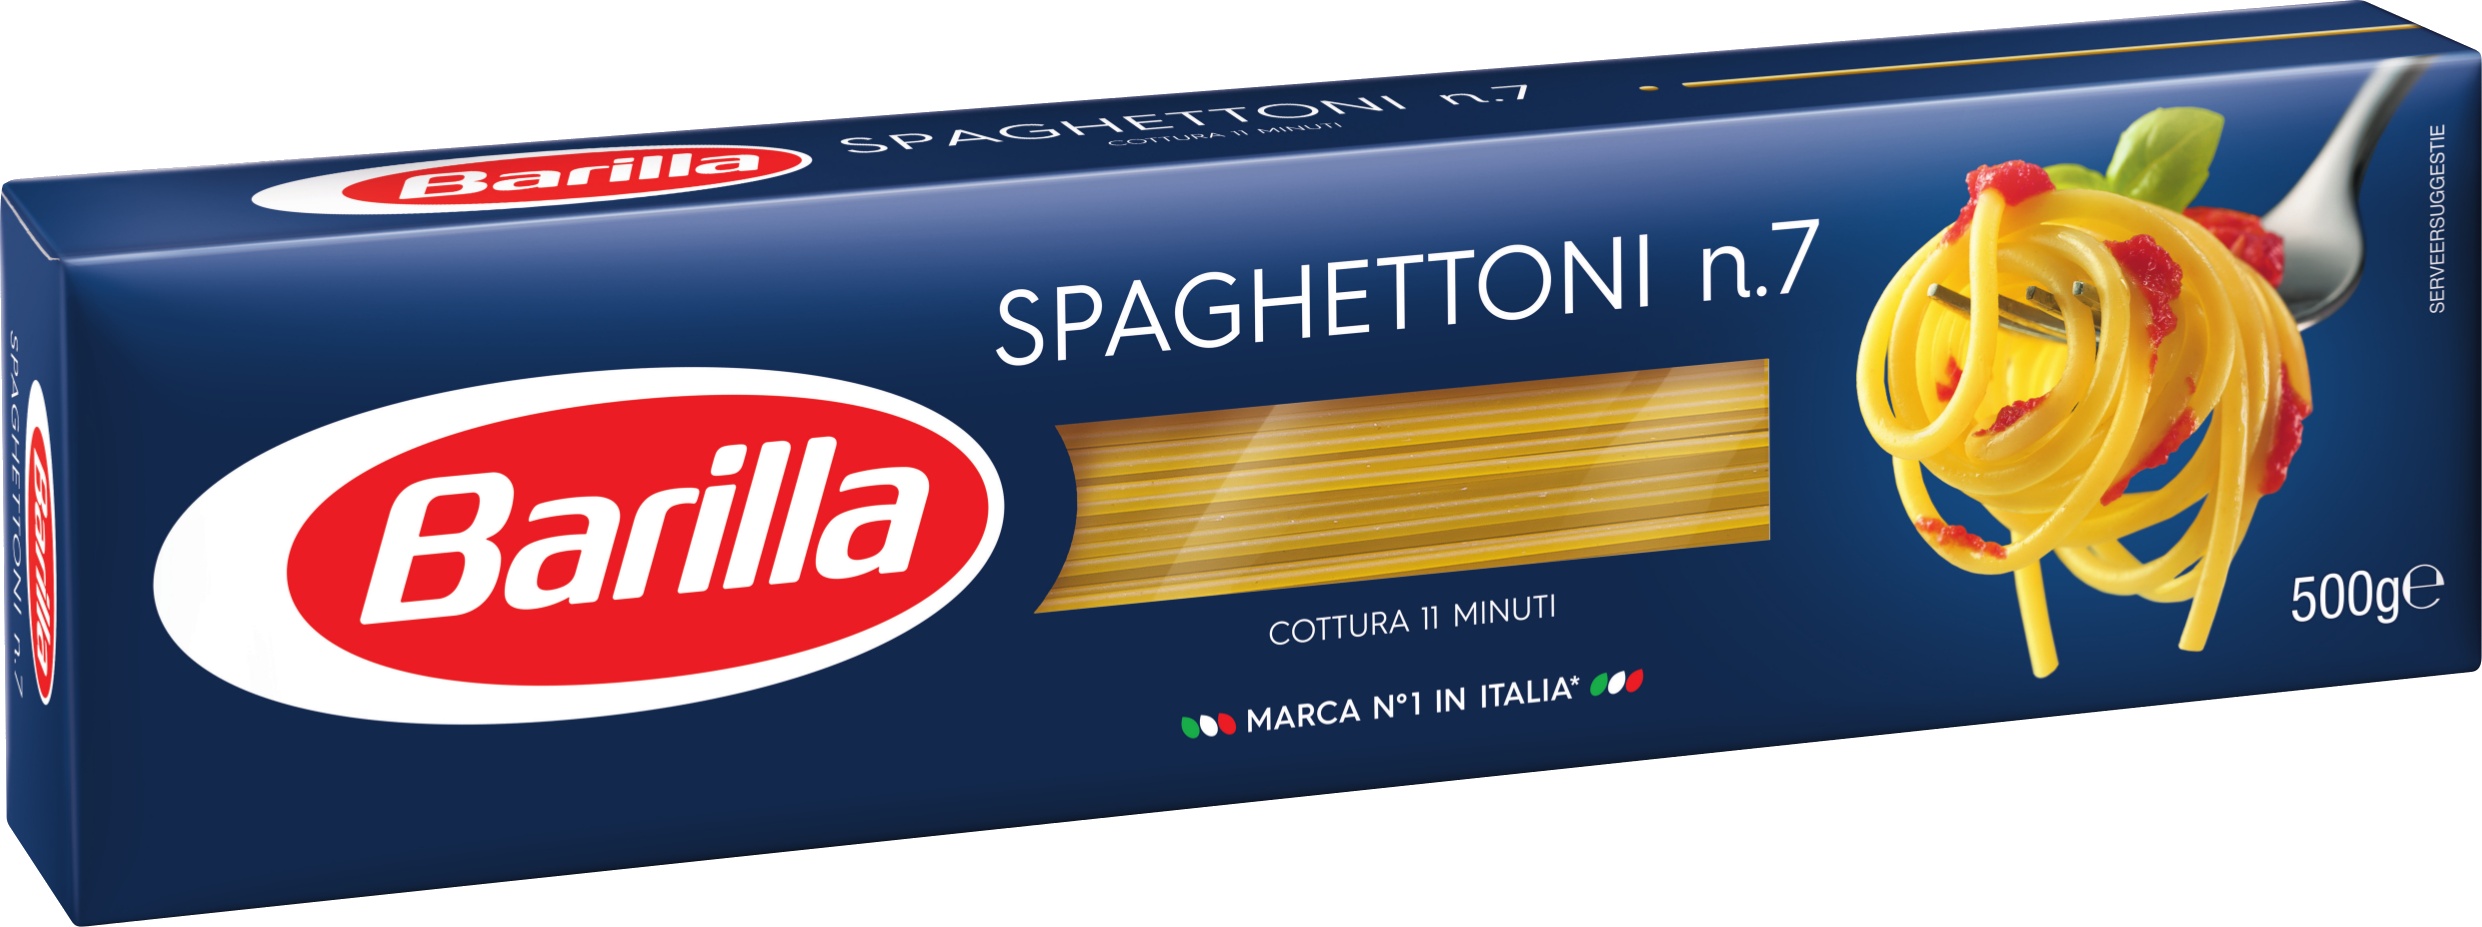 Slika za Testenina spaghettoni 7 Barilla 500 g